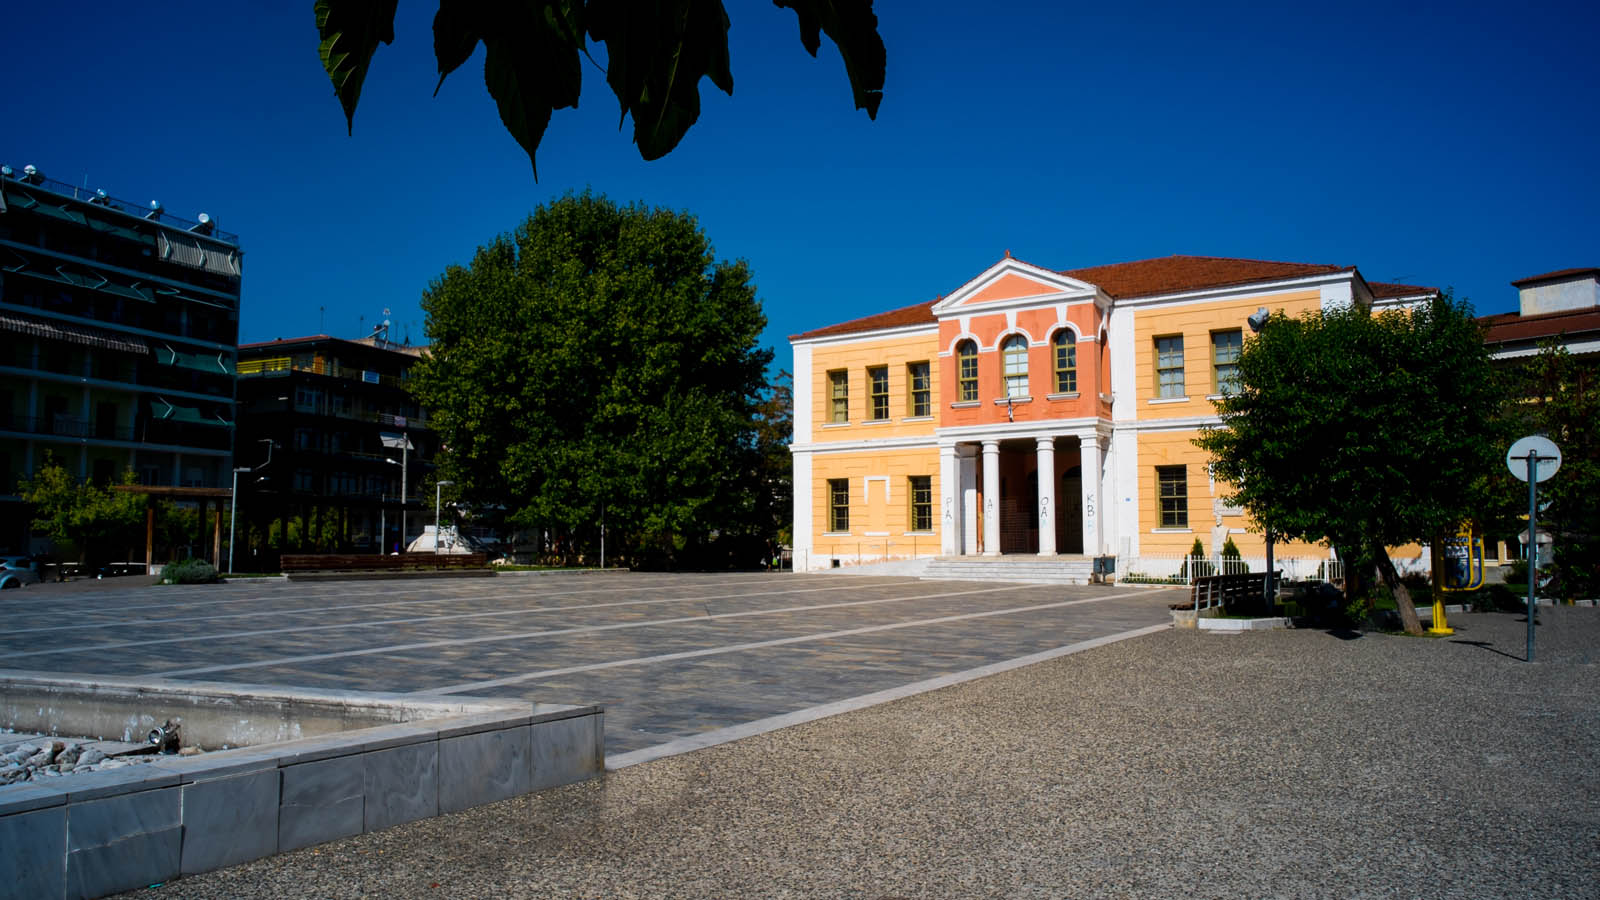 ΕΤΑΔ: Παραχώρησε στον Δήμο Βέροιας το Παλαιό Δικαστικό Μέγαρο της πόλης